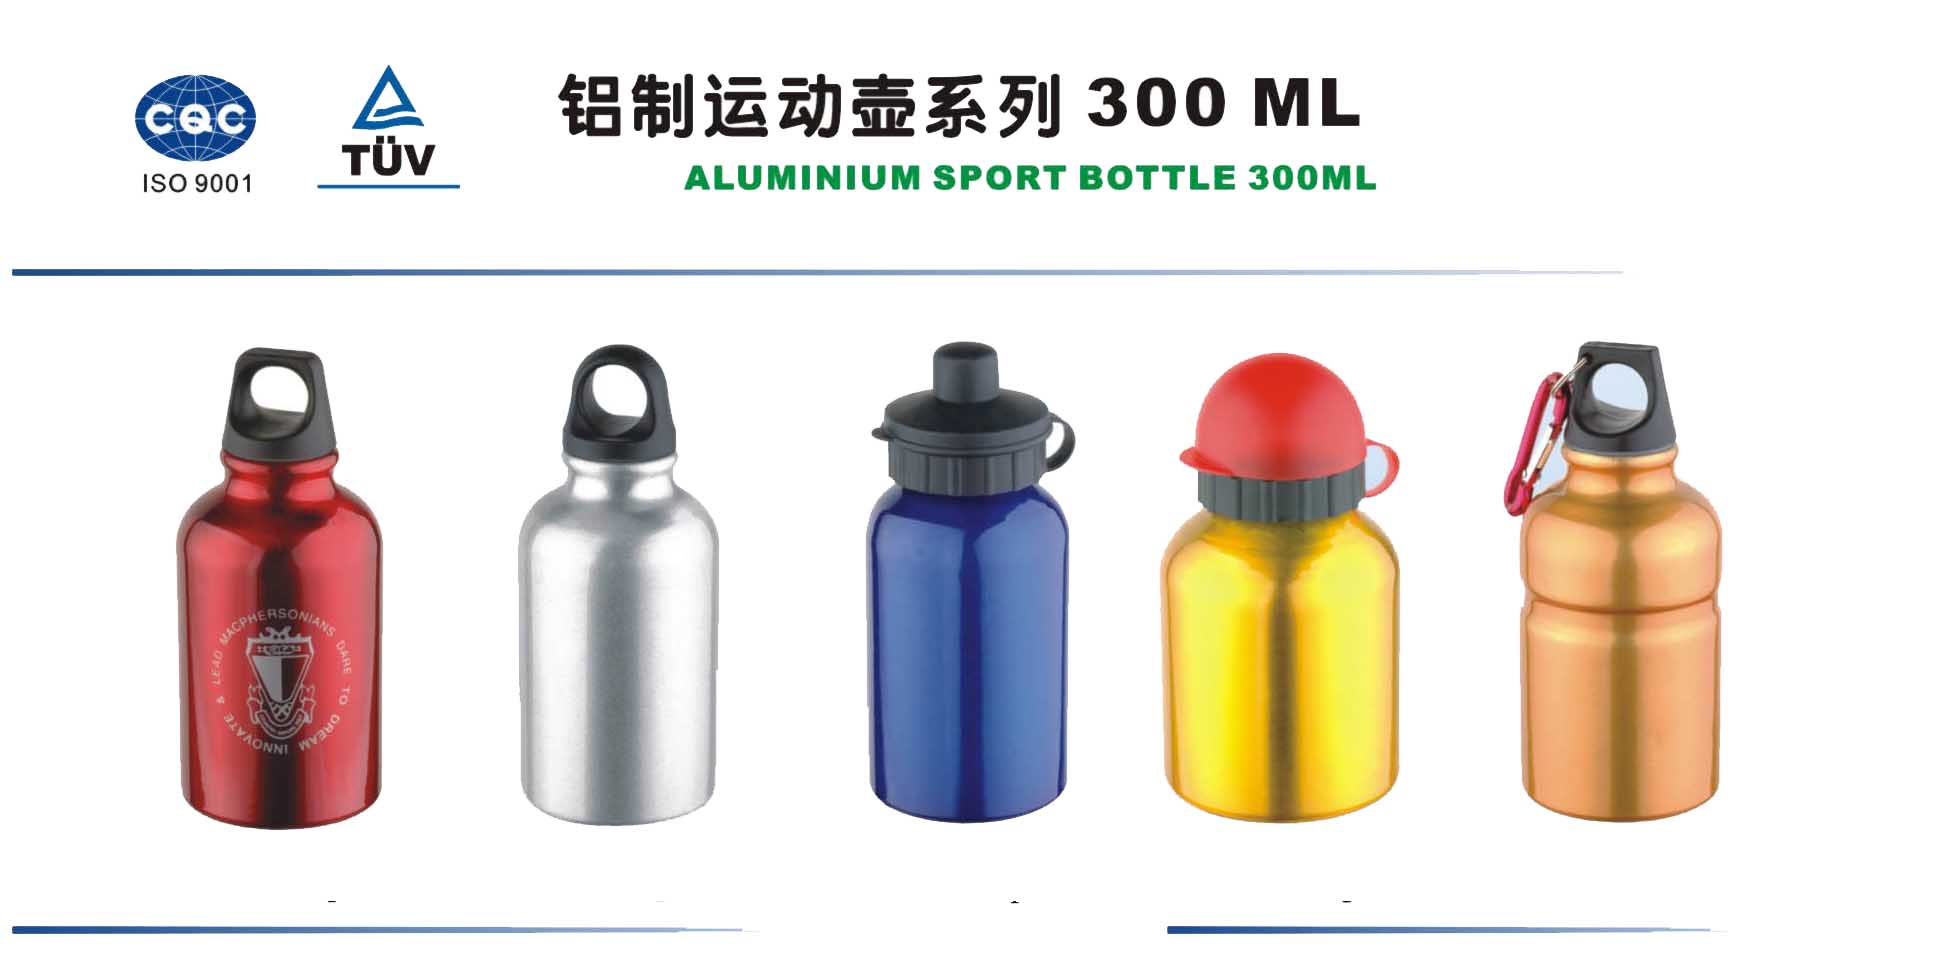  Aluminum Bottle 300ml ( Aluminum Bottle 300ml)